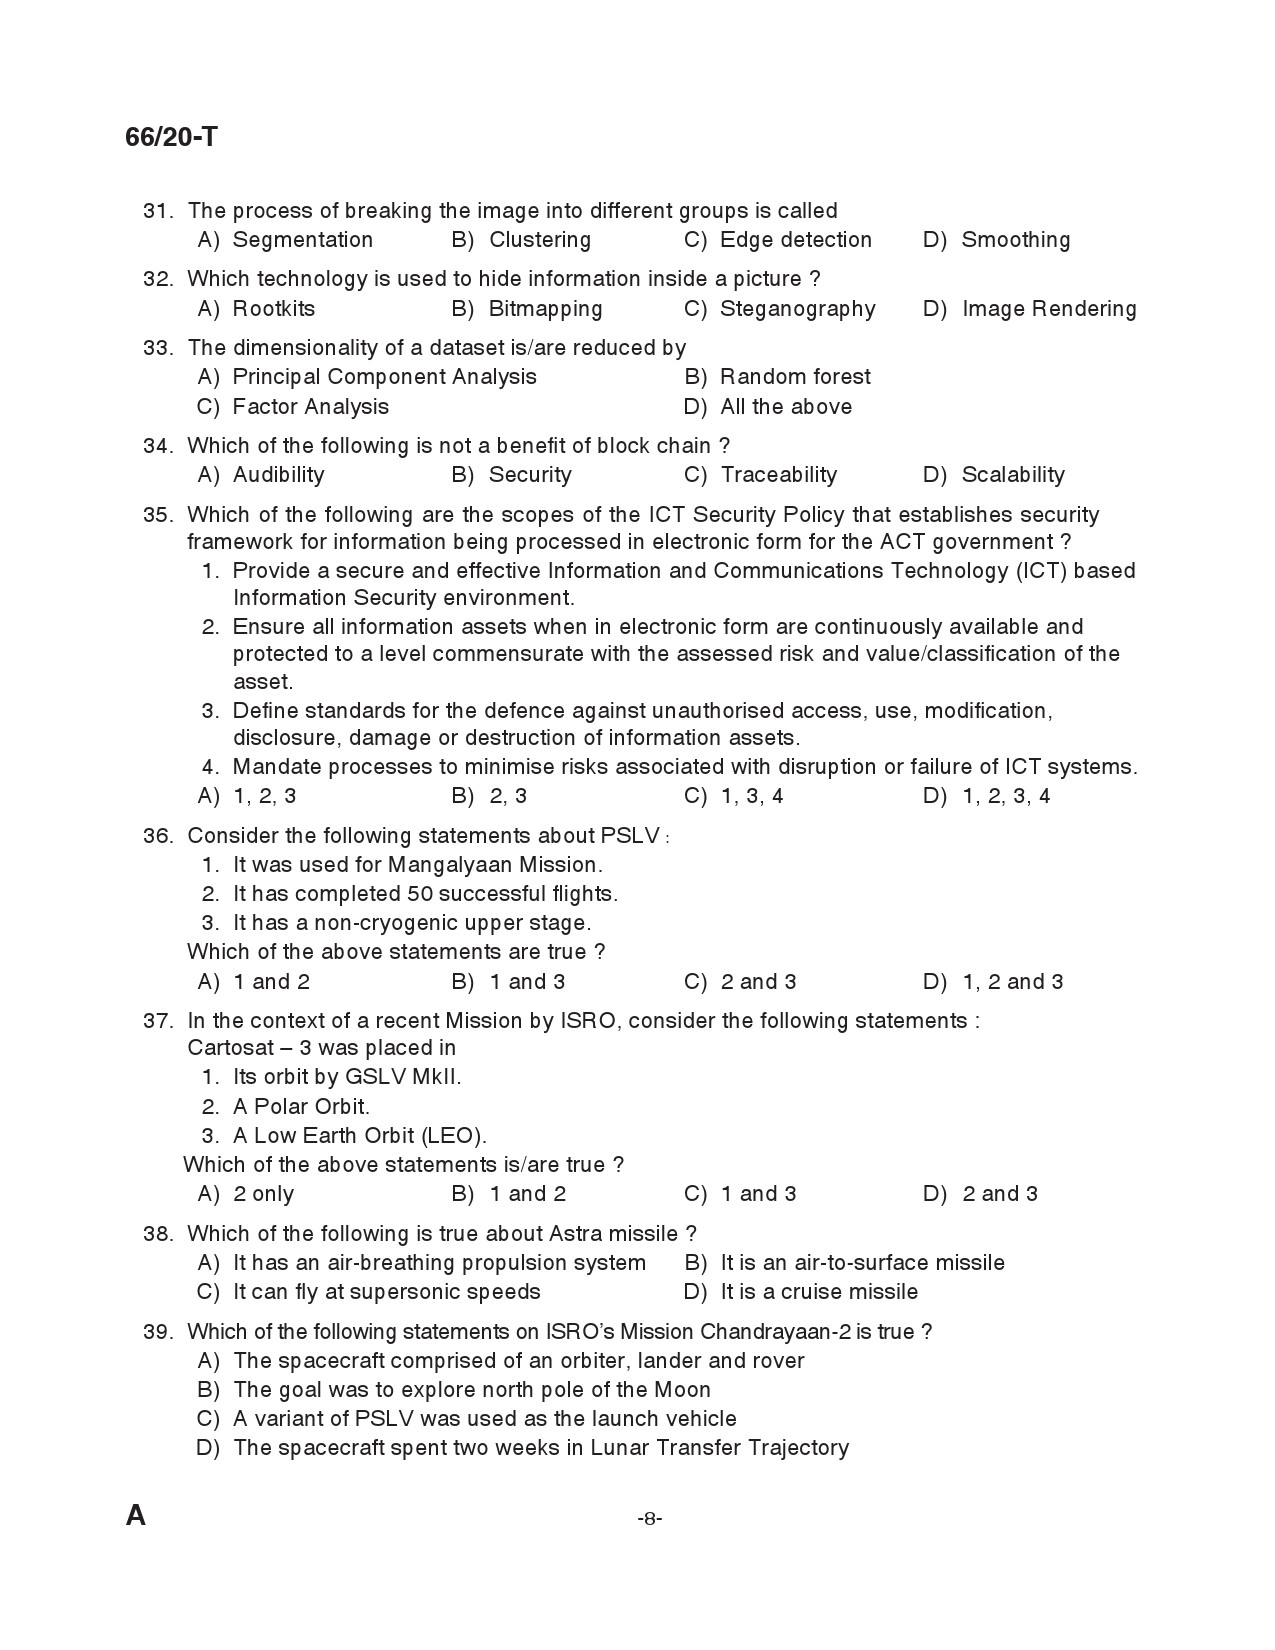 KAS Officer Paper II Tamil Exam 2020 Code 662020 T 7